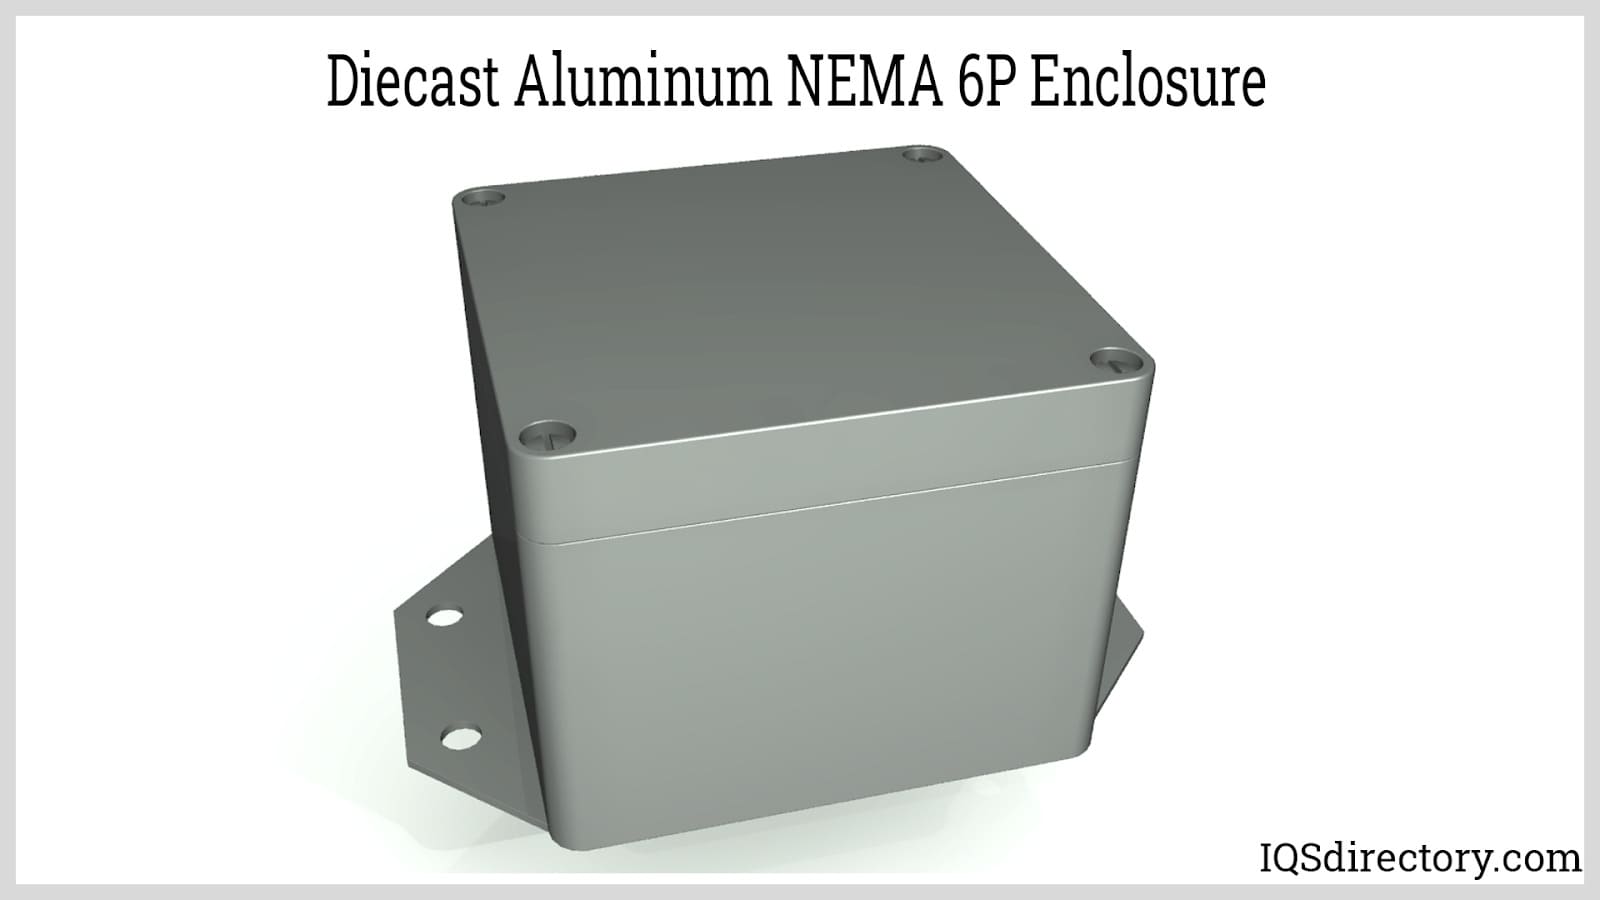 Diecast Aluminum NEMA 6P Enclosure